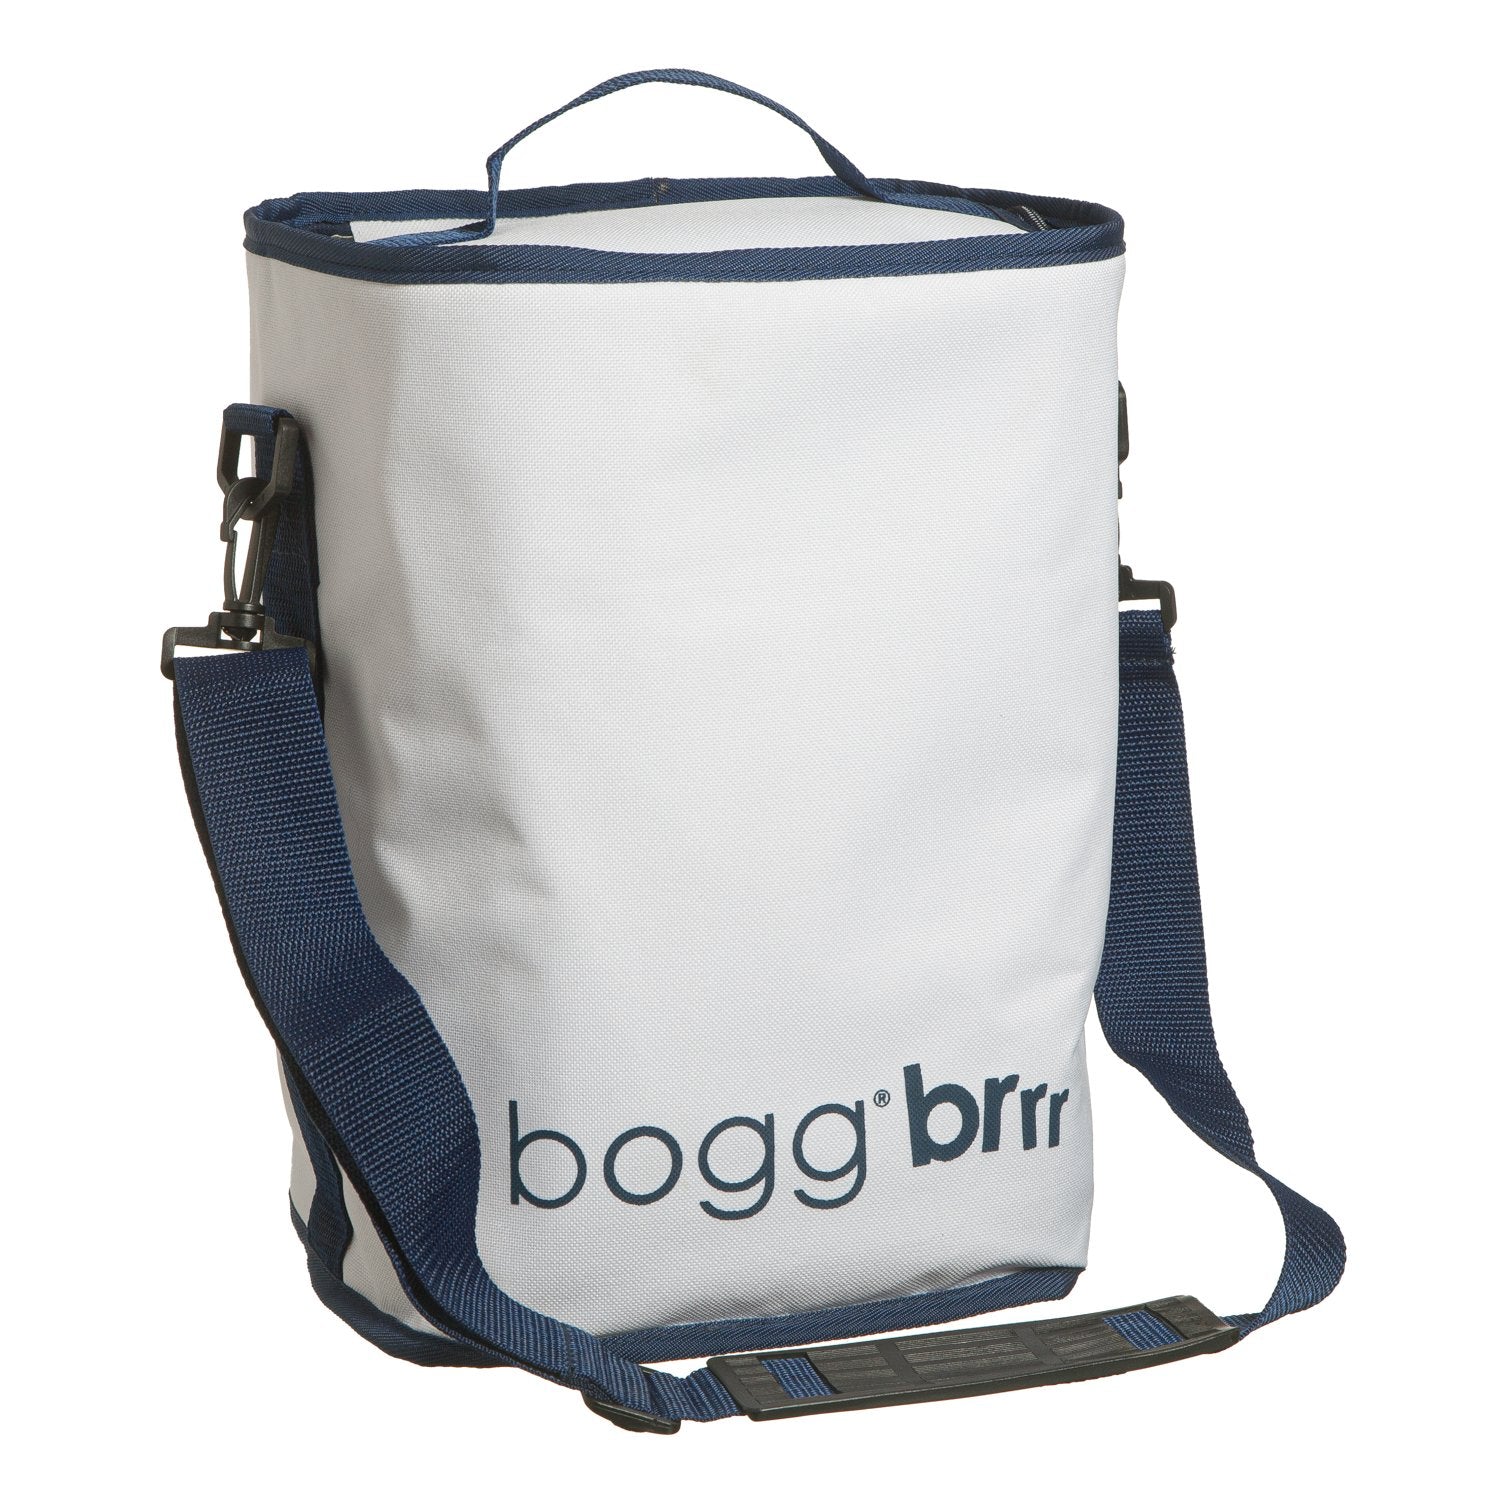 Bogg Bag Brrr Cooler Inserts - Brrr and A Half / Margarita